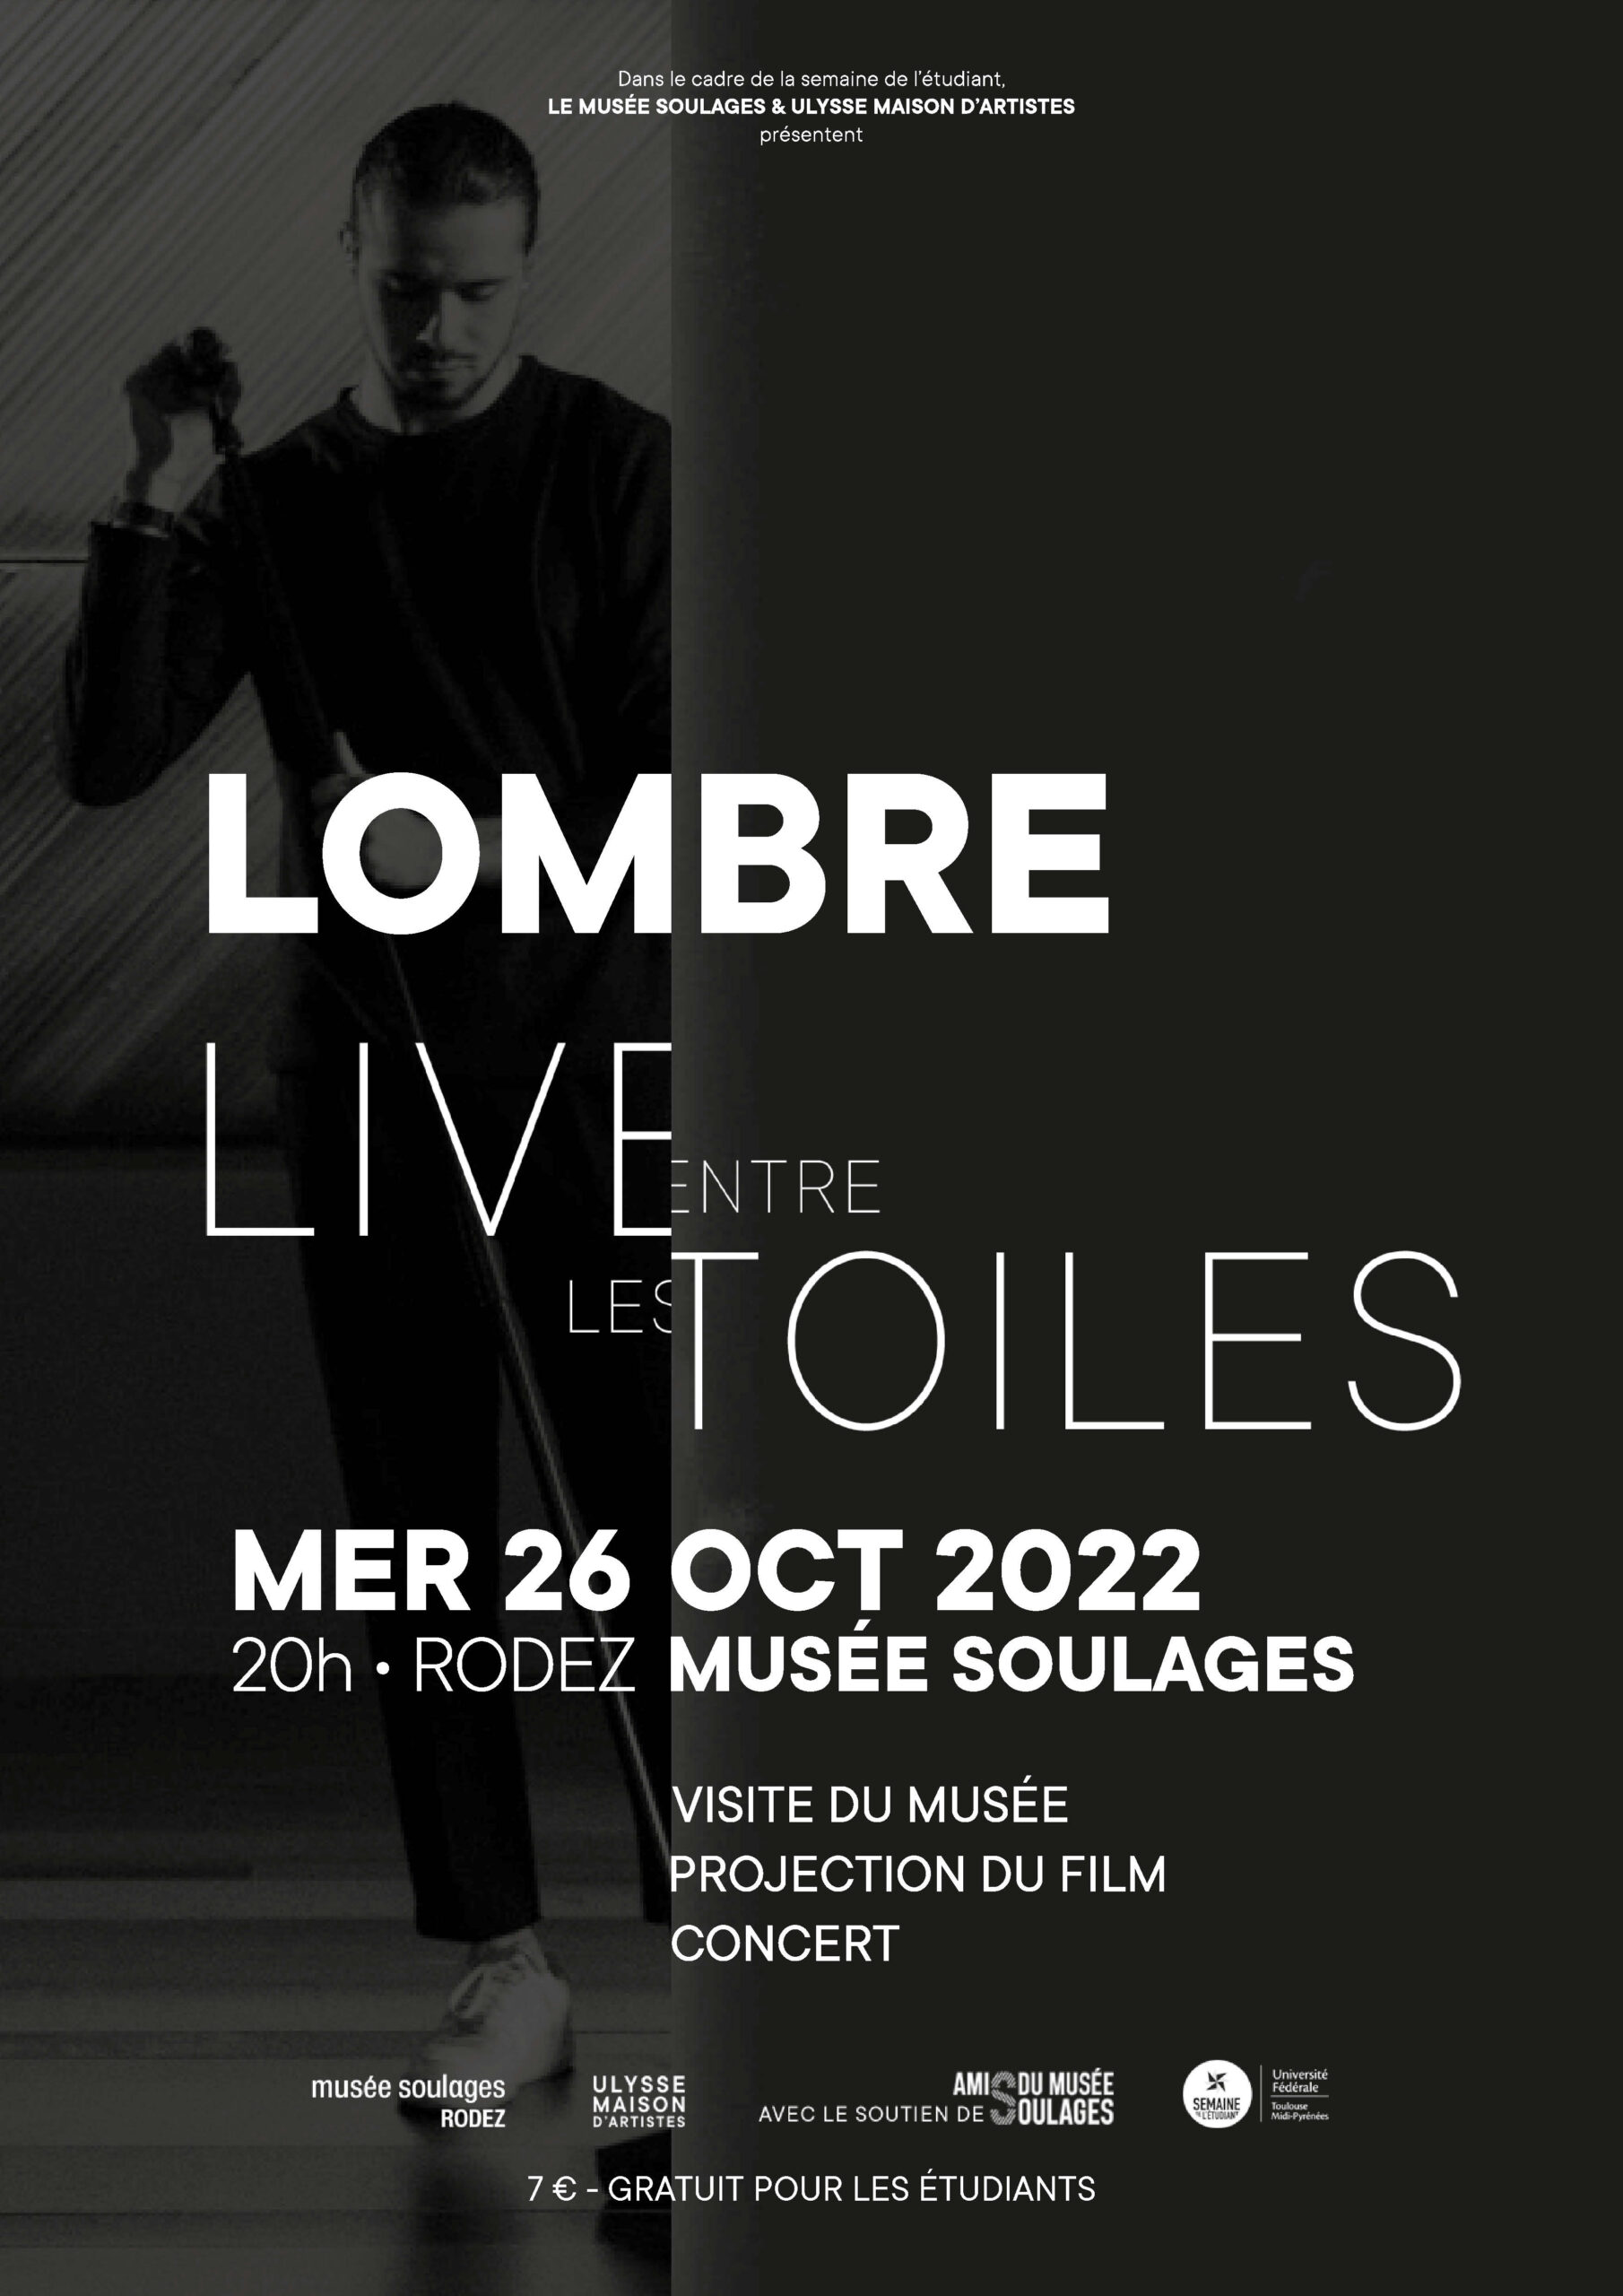 Concert au musée Soulages de Rodez le 26 octobre prochain !